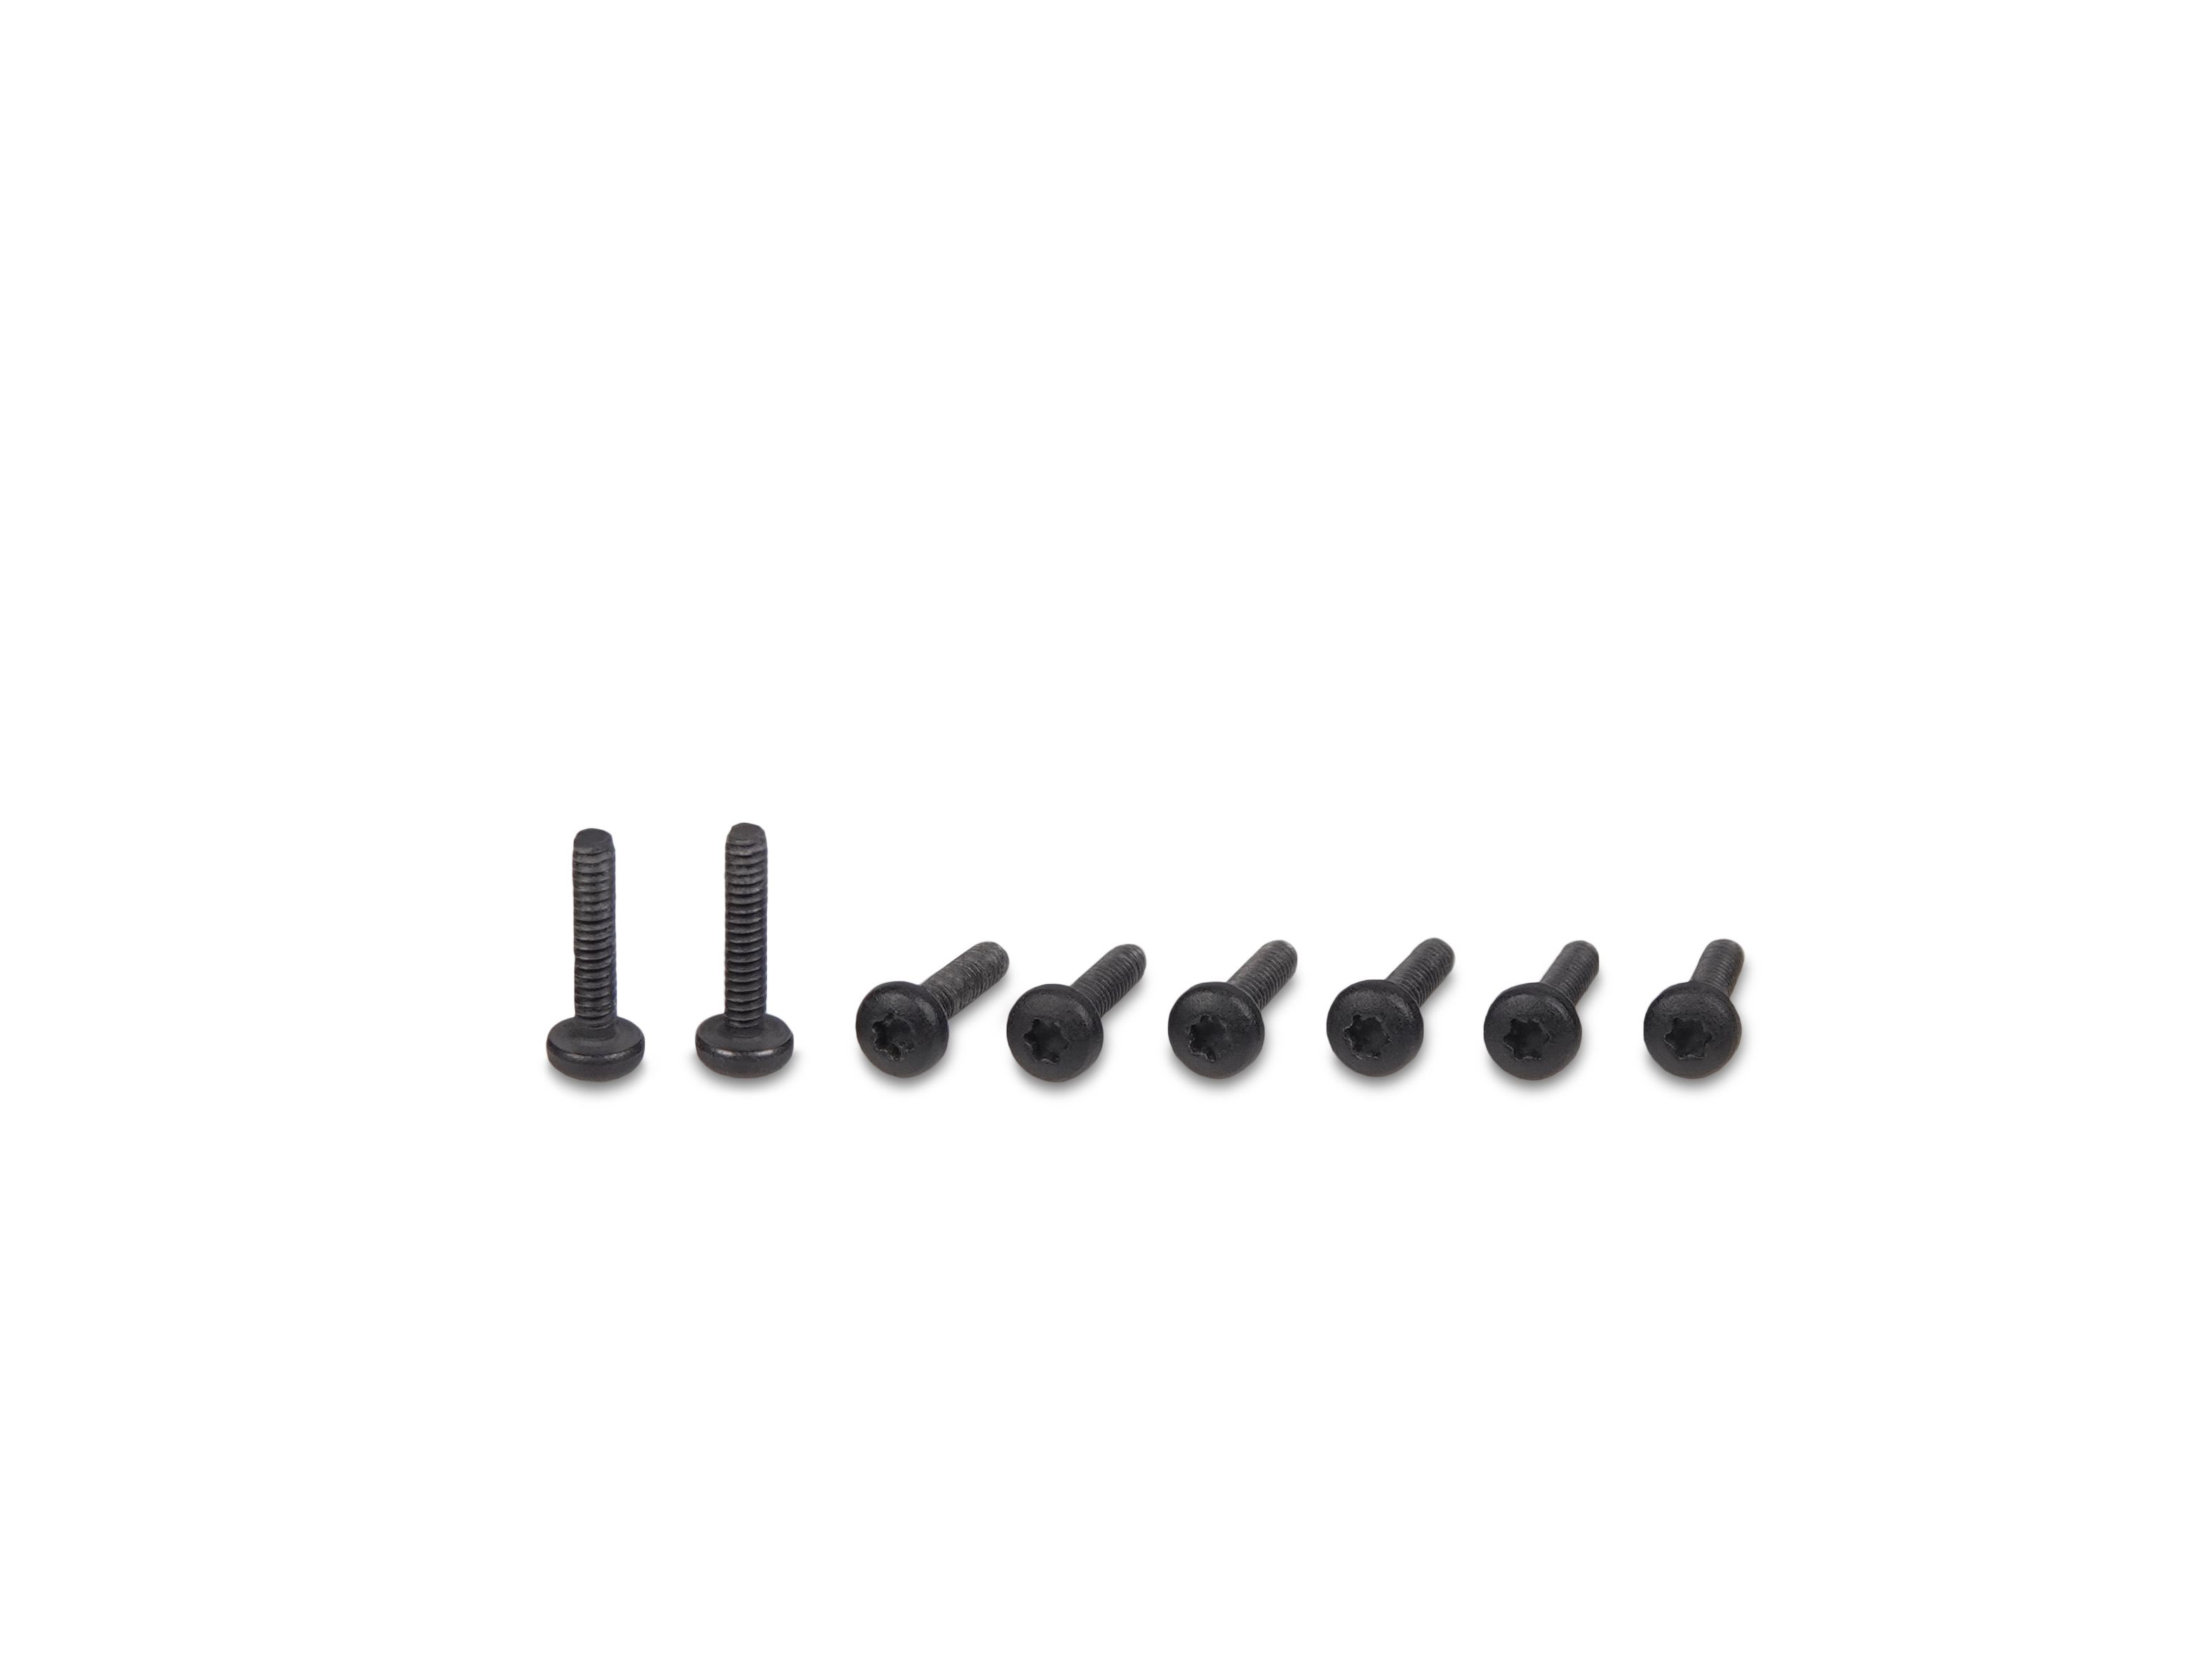 SL Mono screws